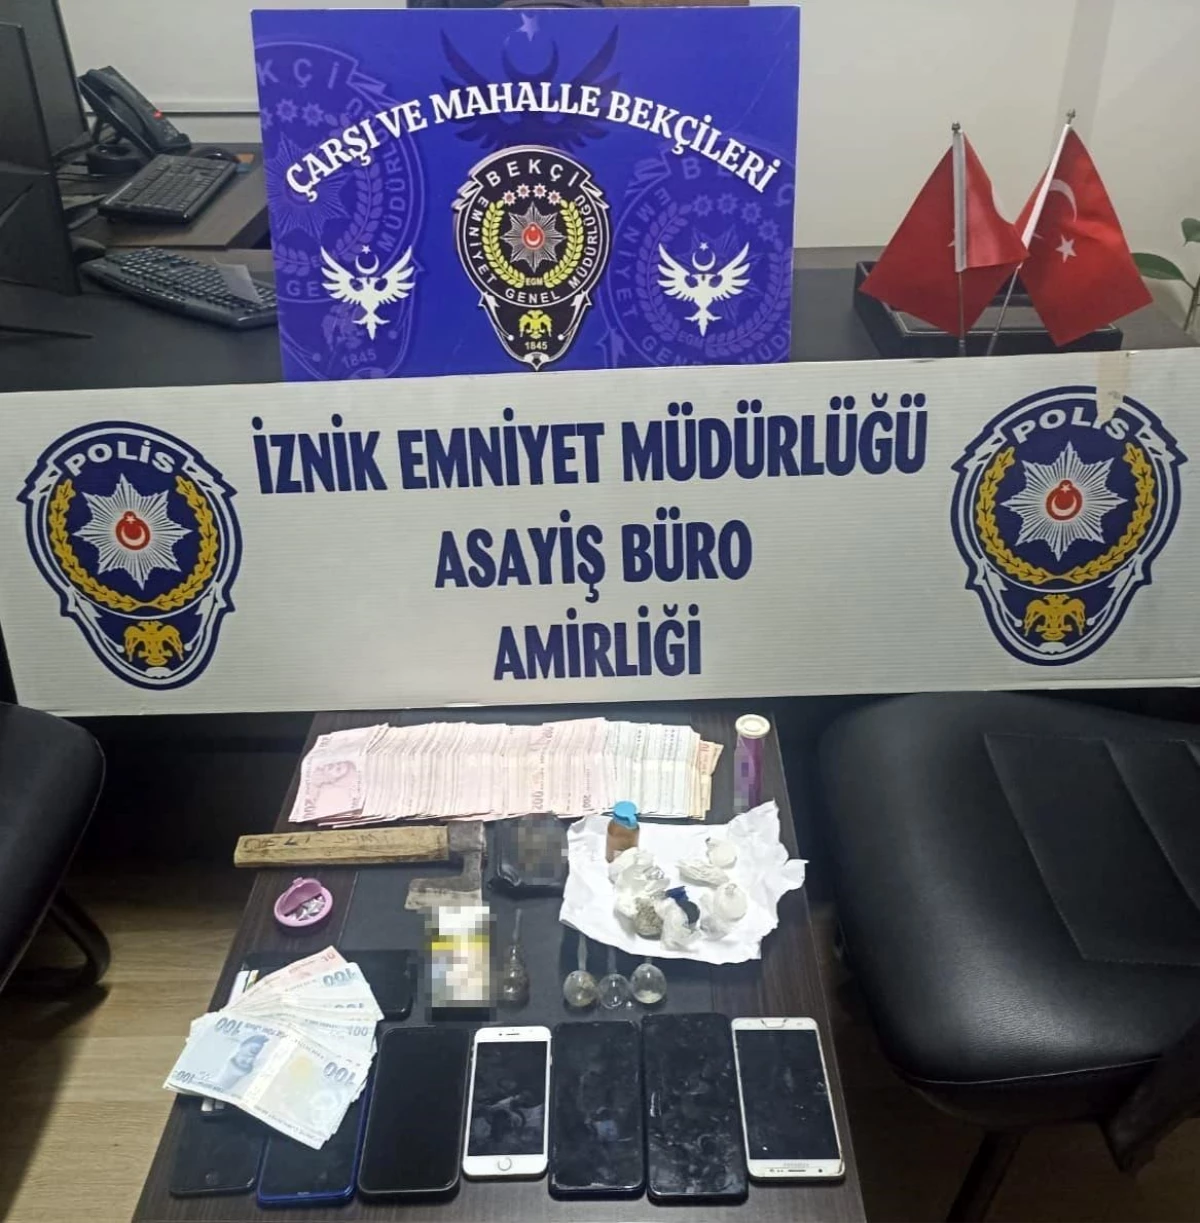 Bursa İznik\'te Uyuşturucu Operasyonu: 8 Kişi Yakalandı